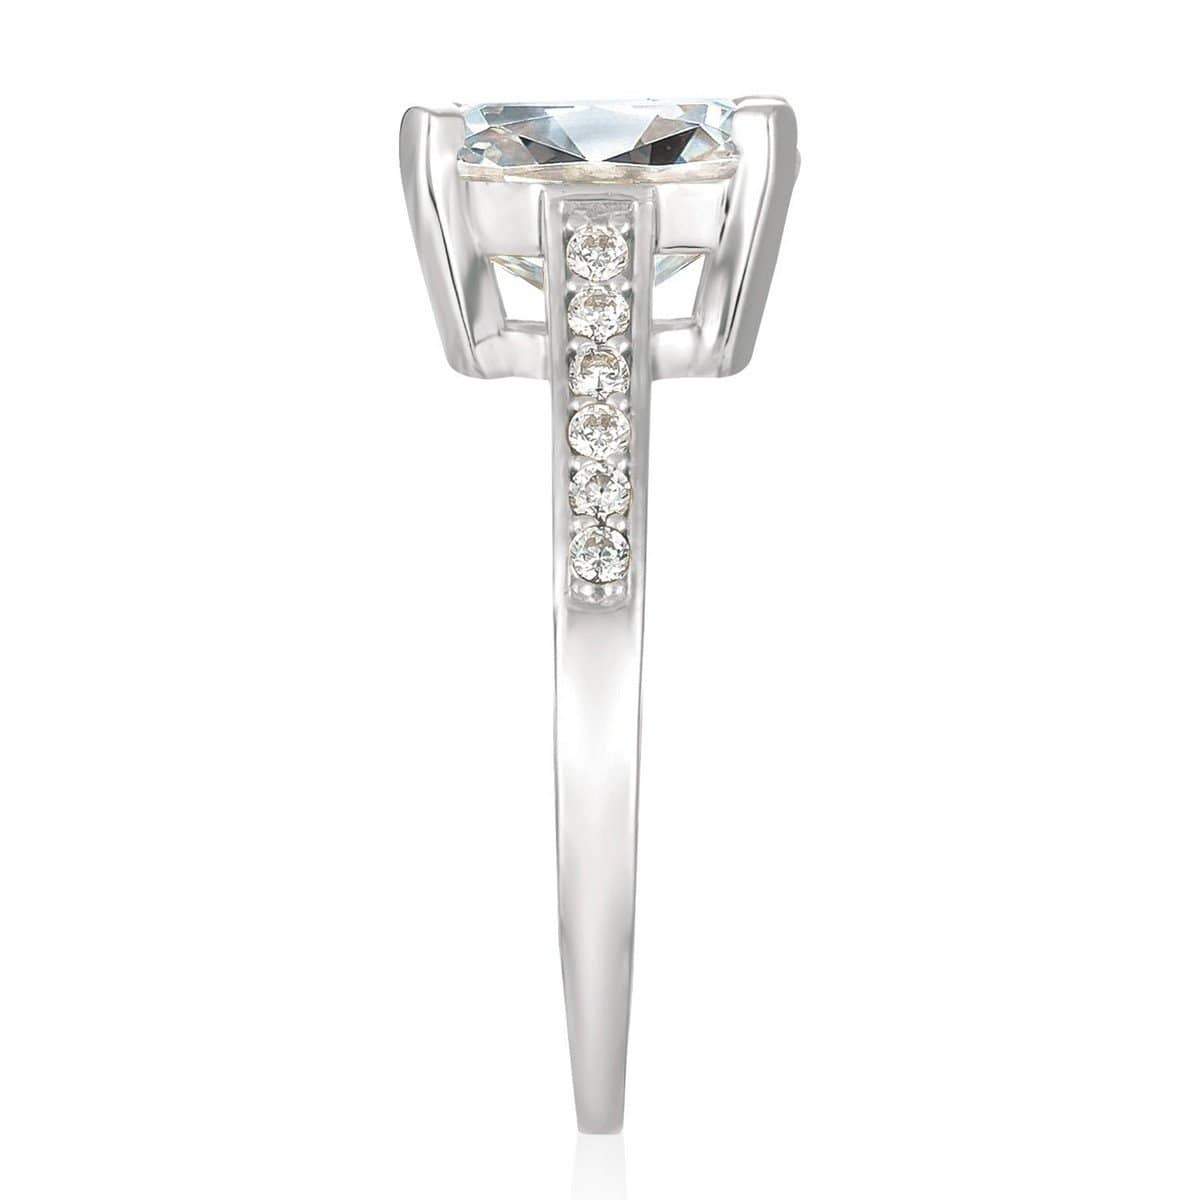 Crislu Jewelry CRISLU Radiant Cushion Cut Ring finished in Pure Platinum - Size 6